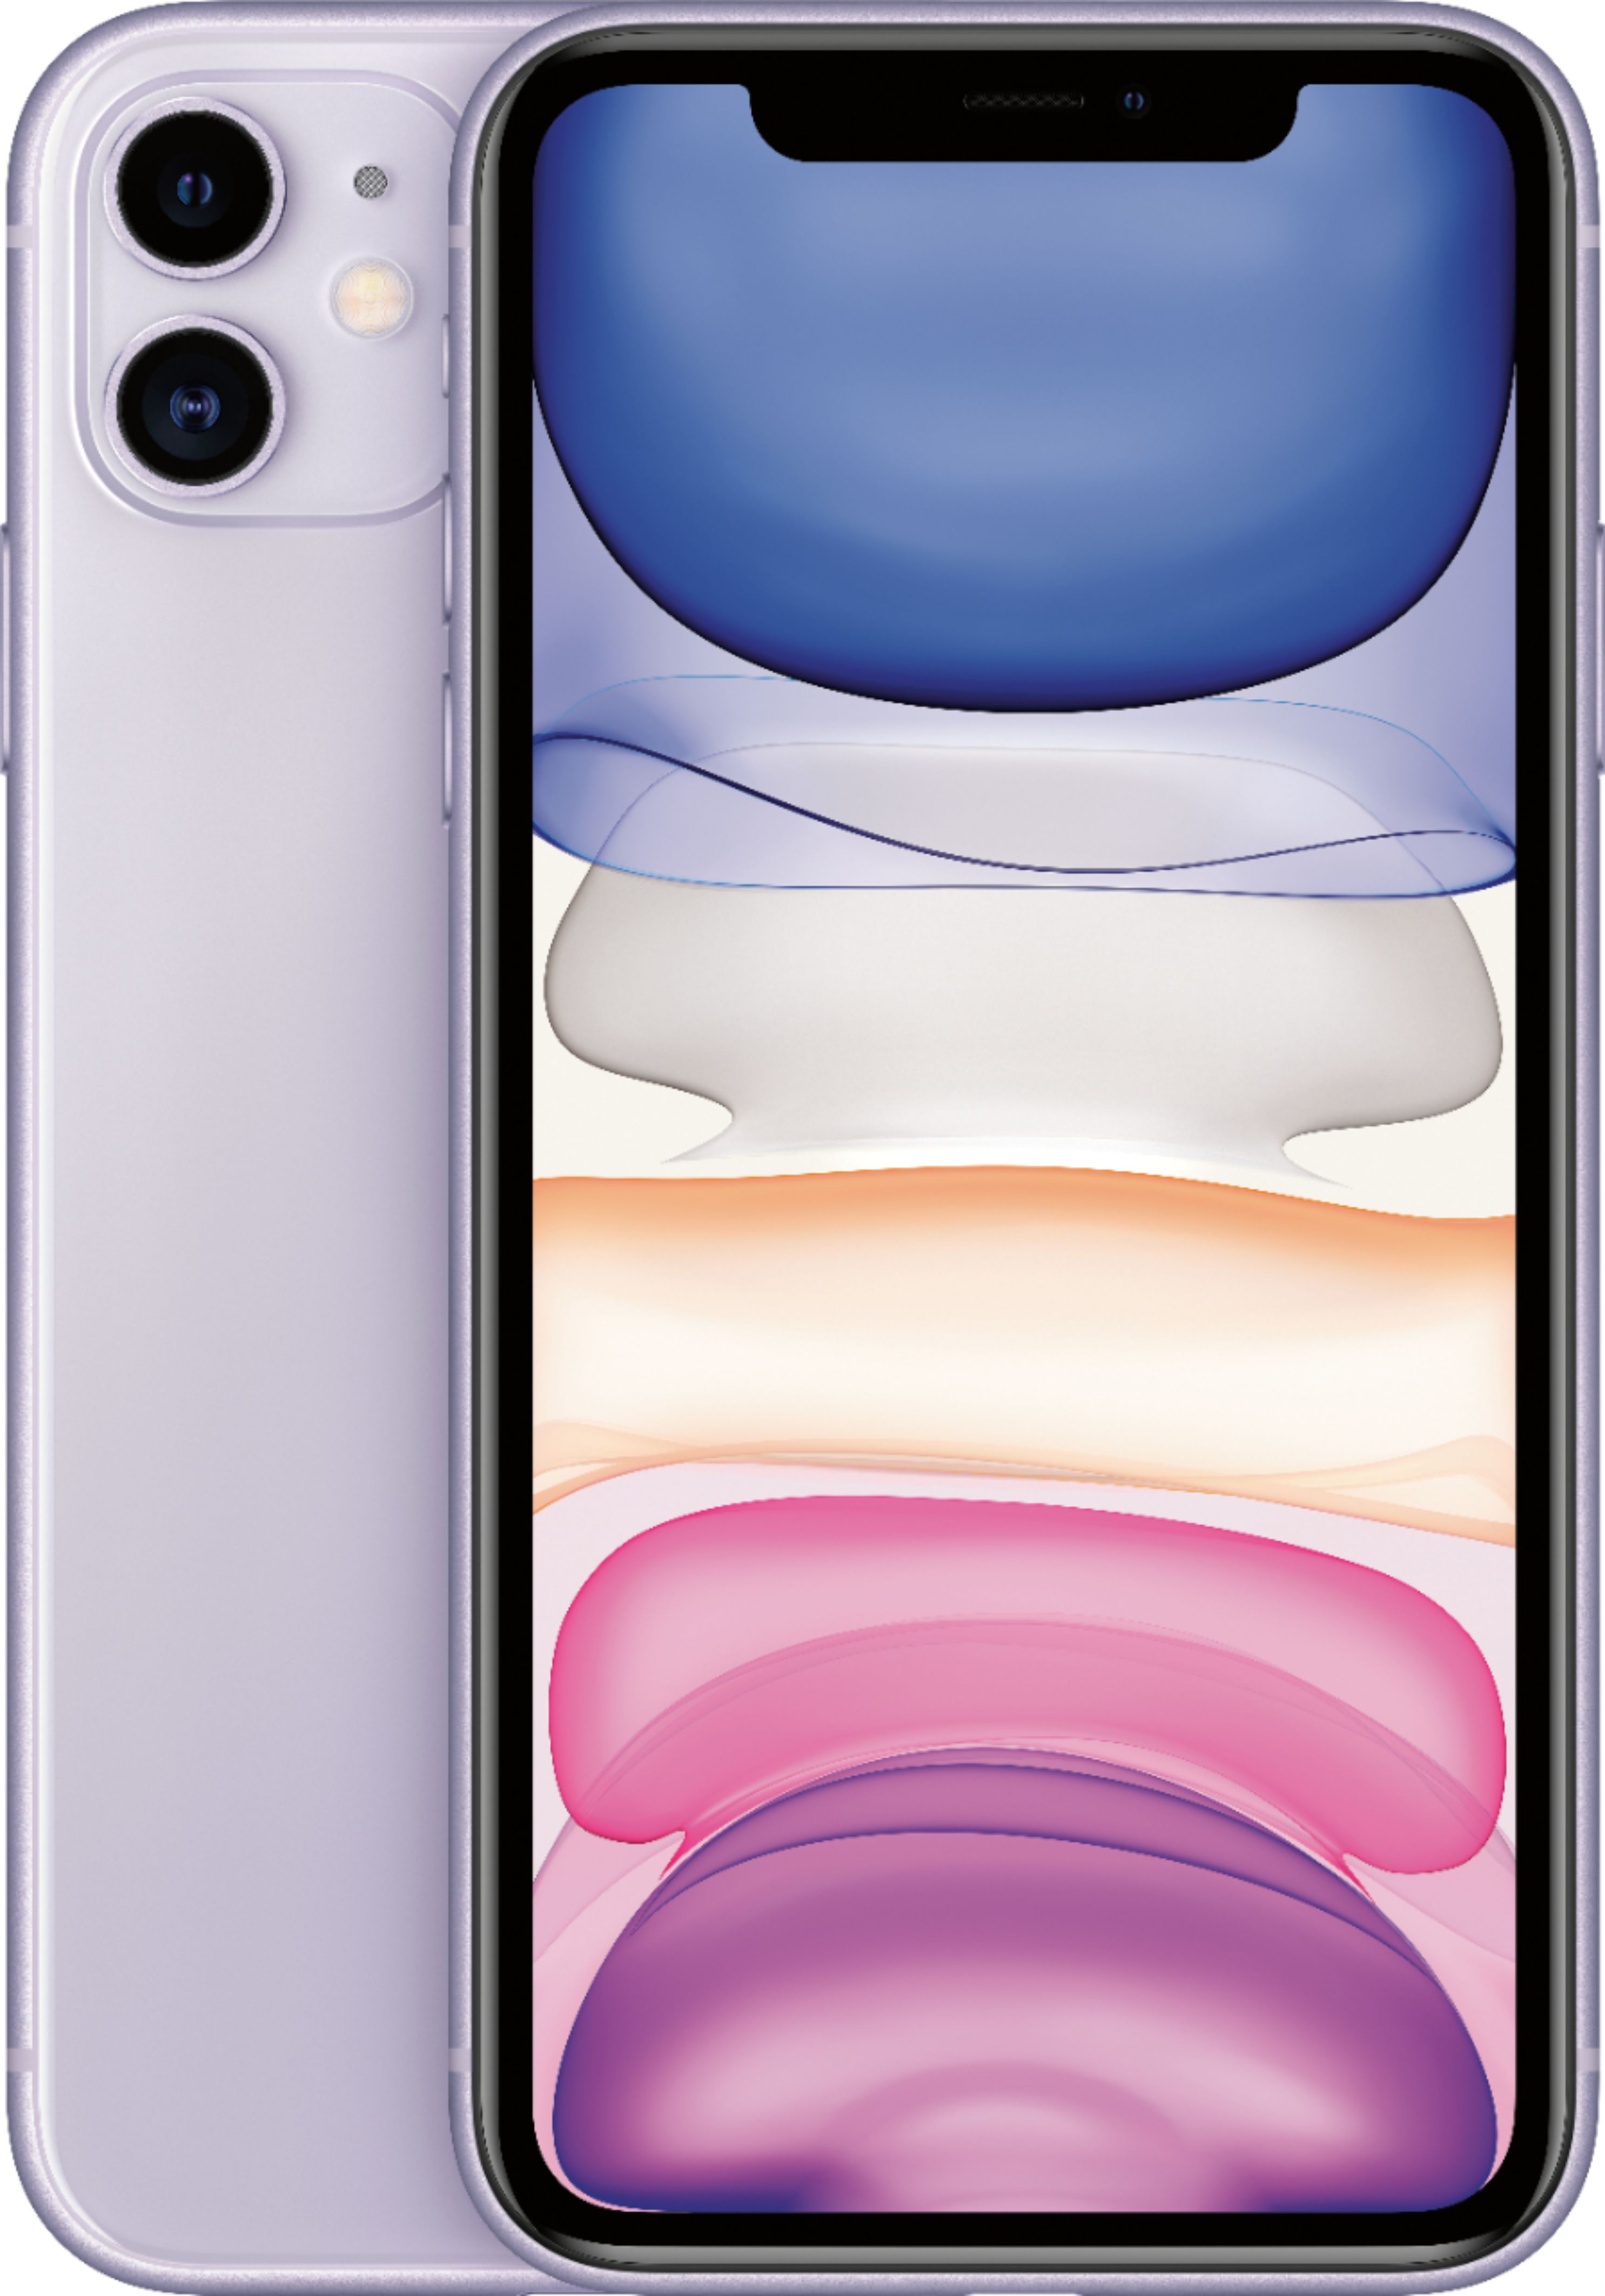 Apple iPhone 11 256GB Purple (Unlocked) MWL52LL/A - Best Buy